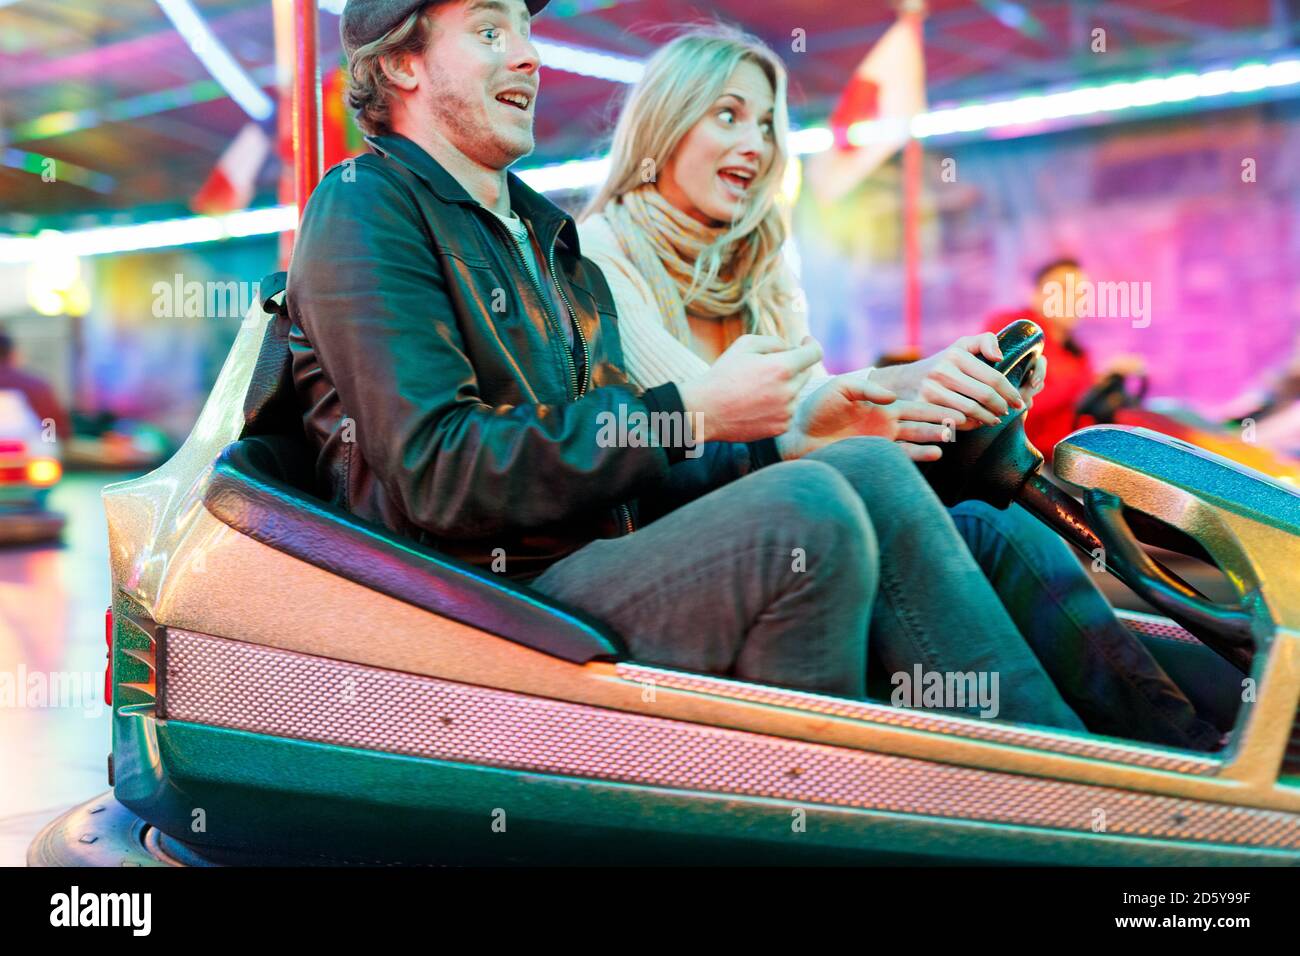 Young couple at fun fair riding bumper car Stock Photo